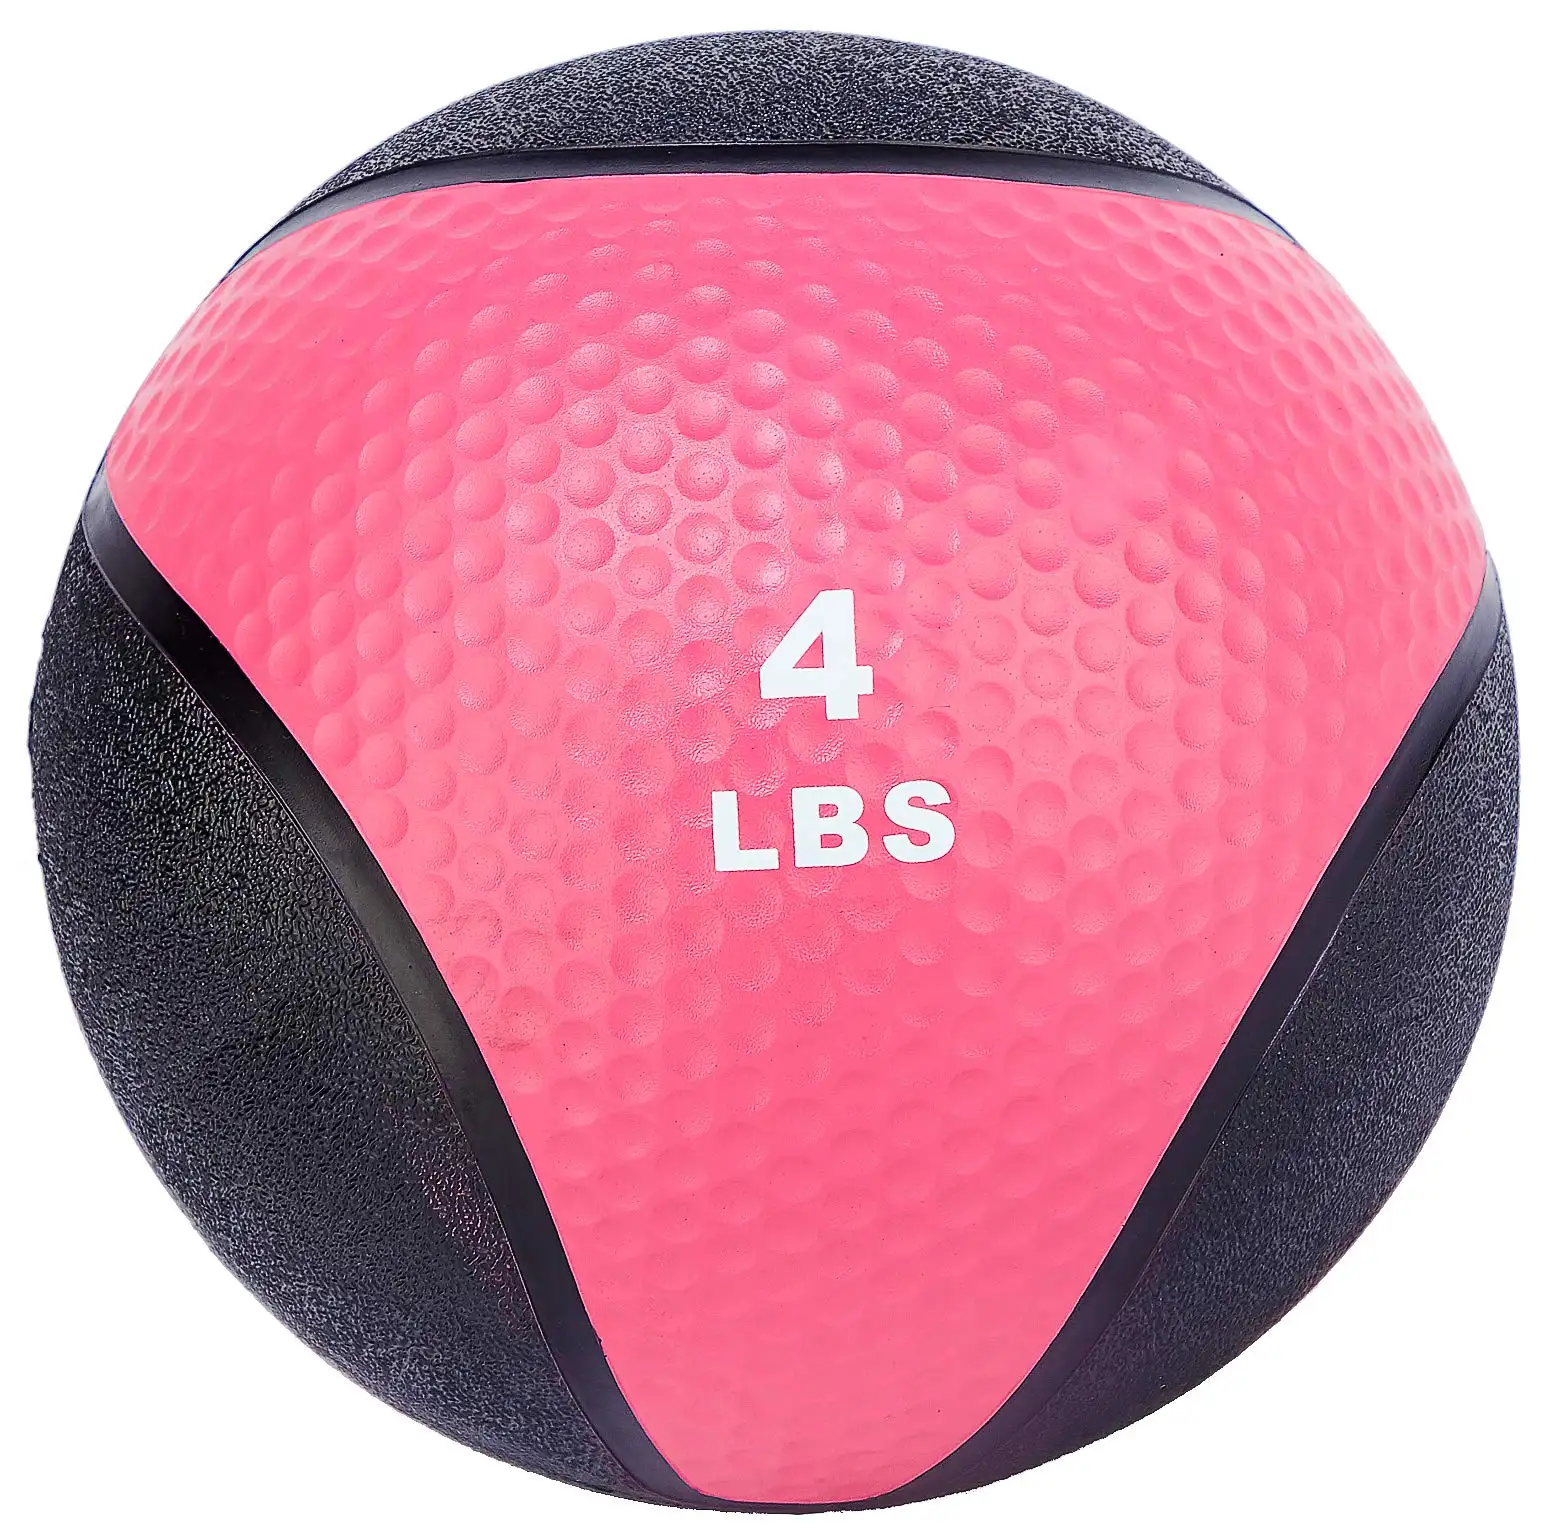 Fácil de aderir anti-deslizamento circular design de ranhuras 4 lbs fitness pesado bola de medicina